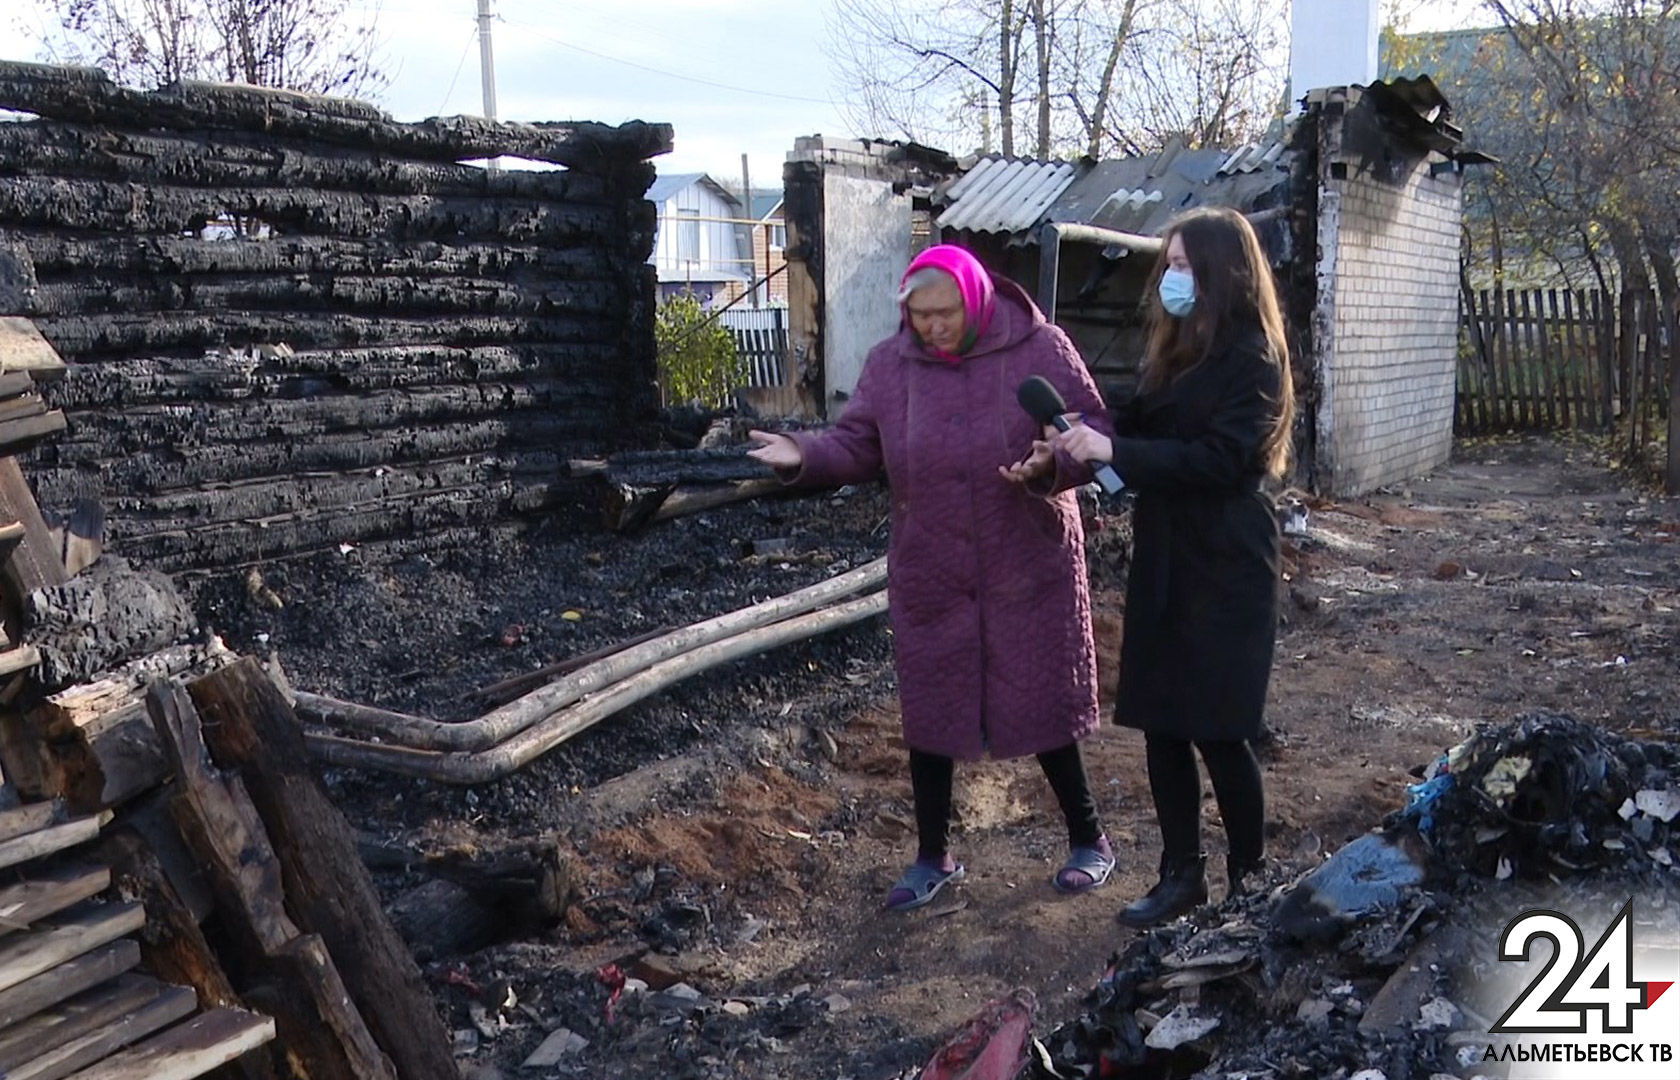 Семье из Альметьевского района, чей дом сгорел дотла, нужна помощь